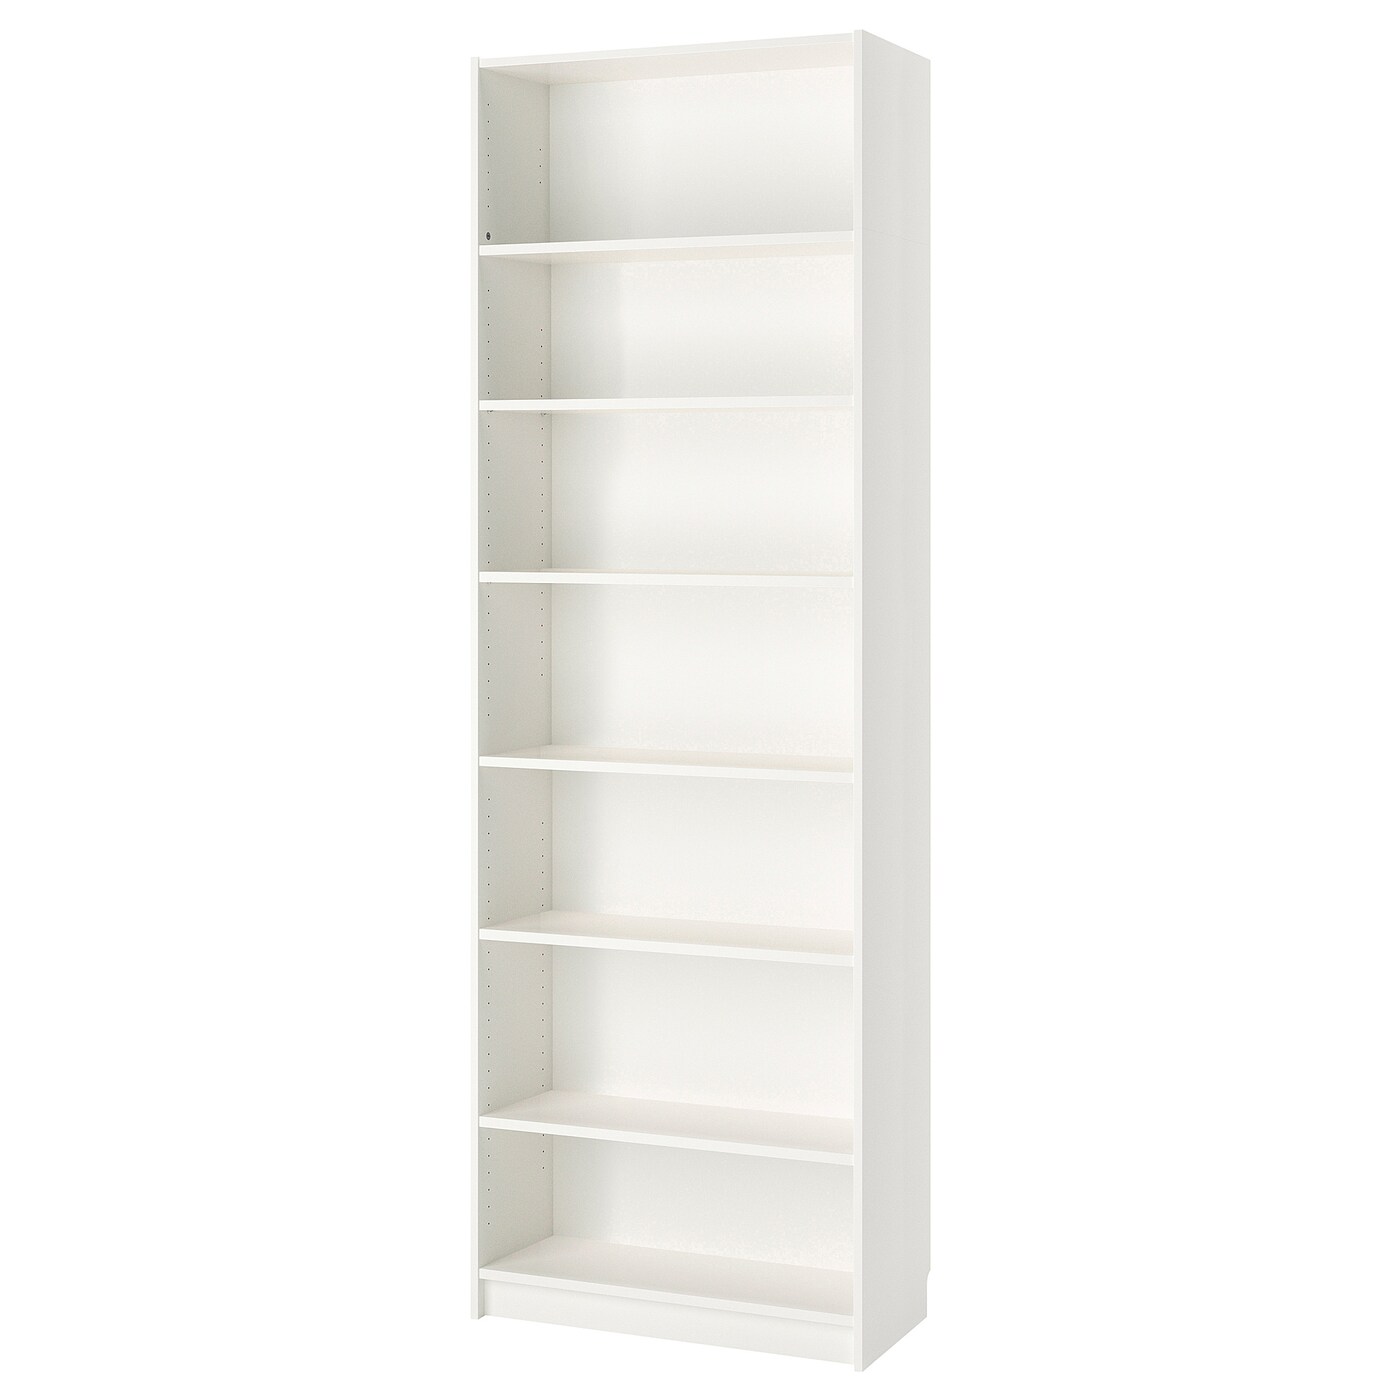 Стеллаж - IKEA BILLY, 80х40х237 см, белый, БИЛЛИ ИКЕА